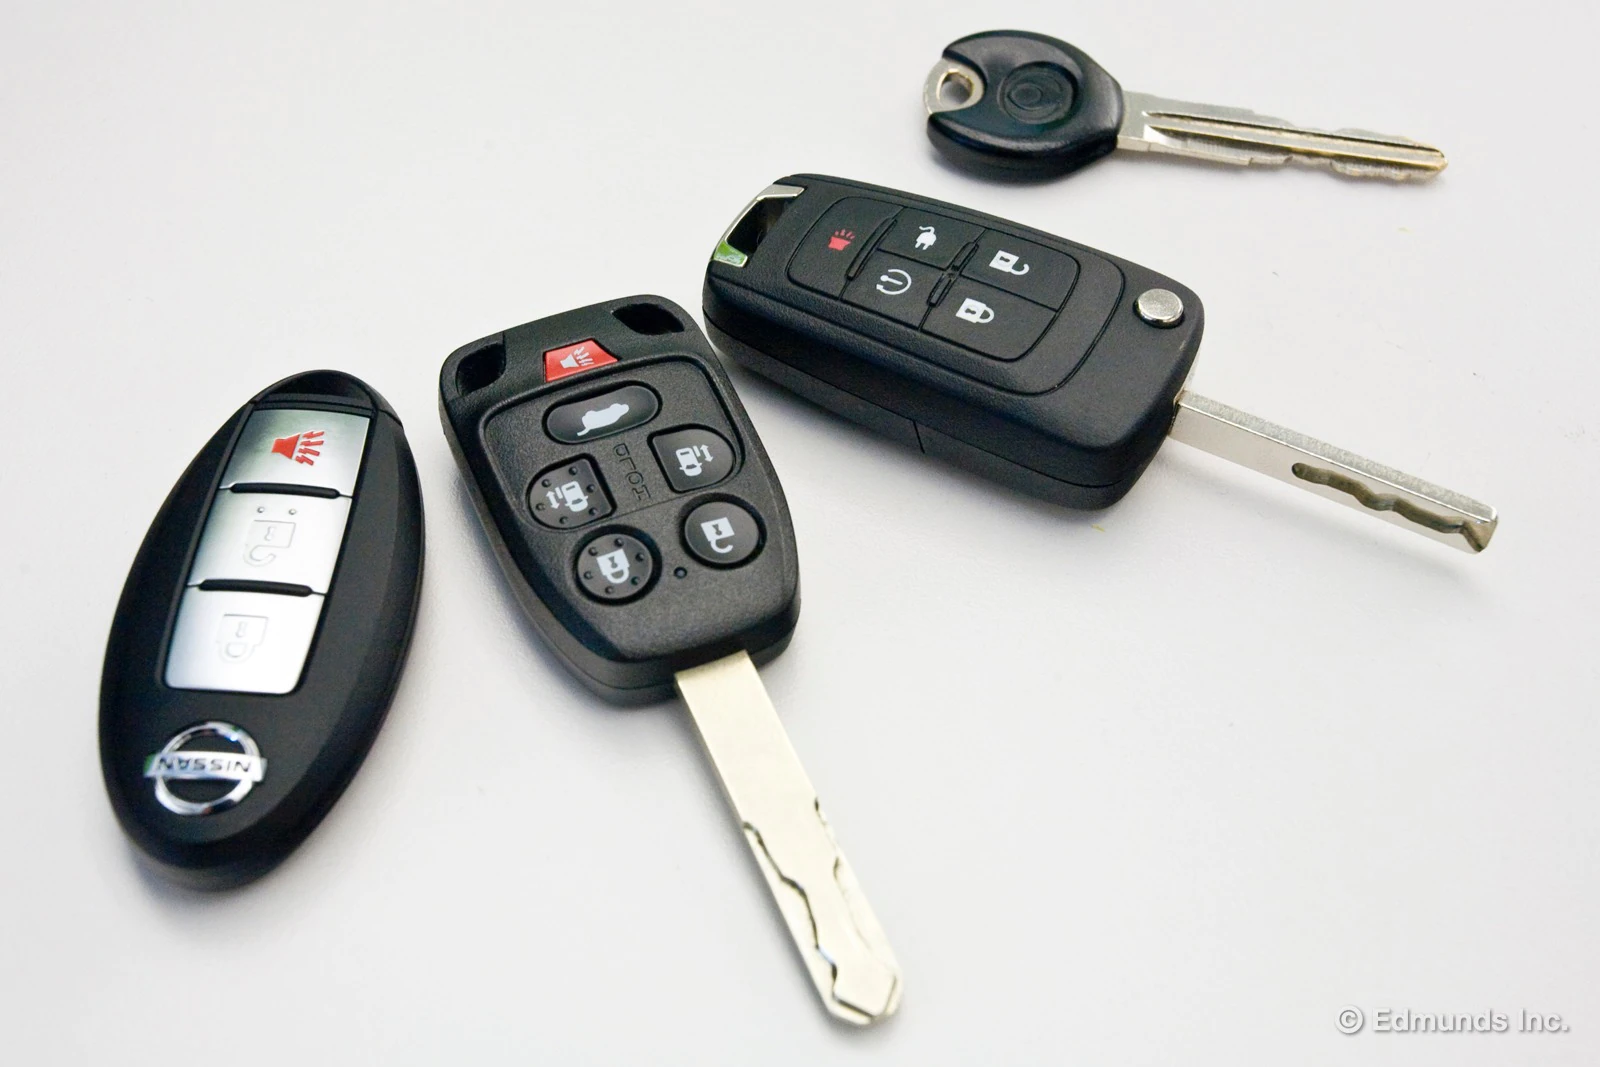 ¿Cuál es el proceso habitual para pedir y recibir llaves de coche de repuesto de un fabricante de llaves de coche?